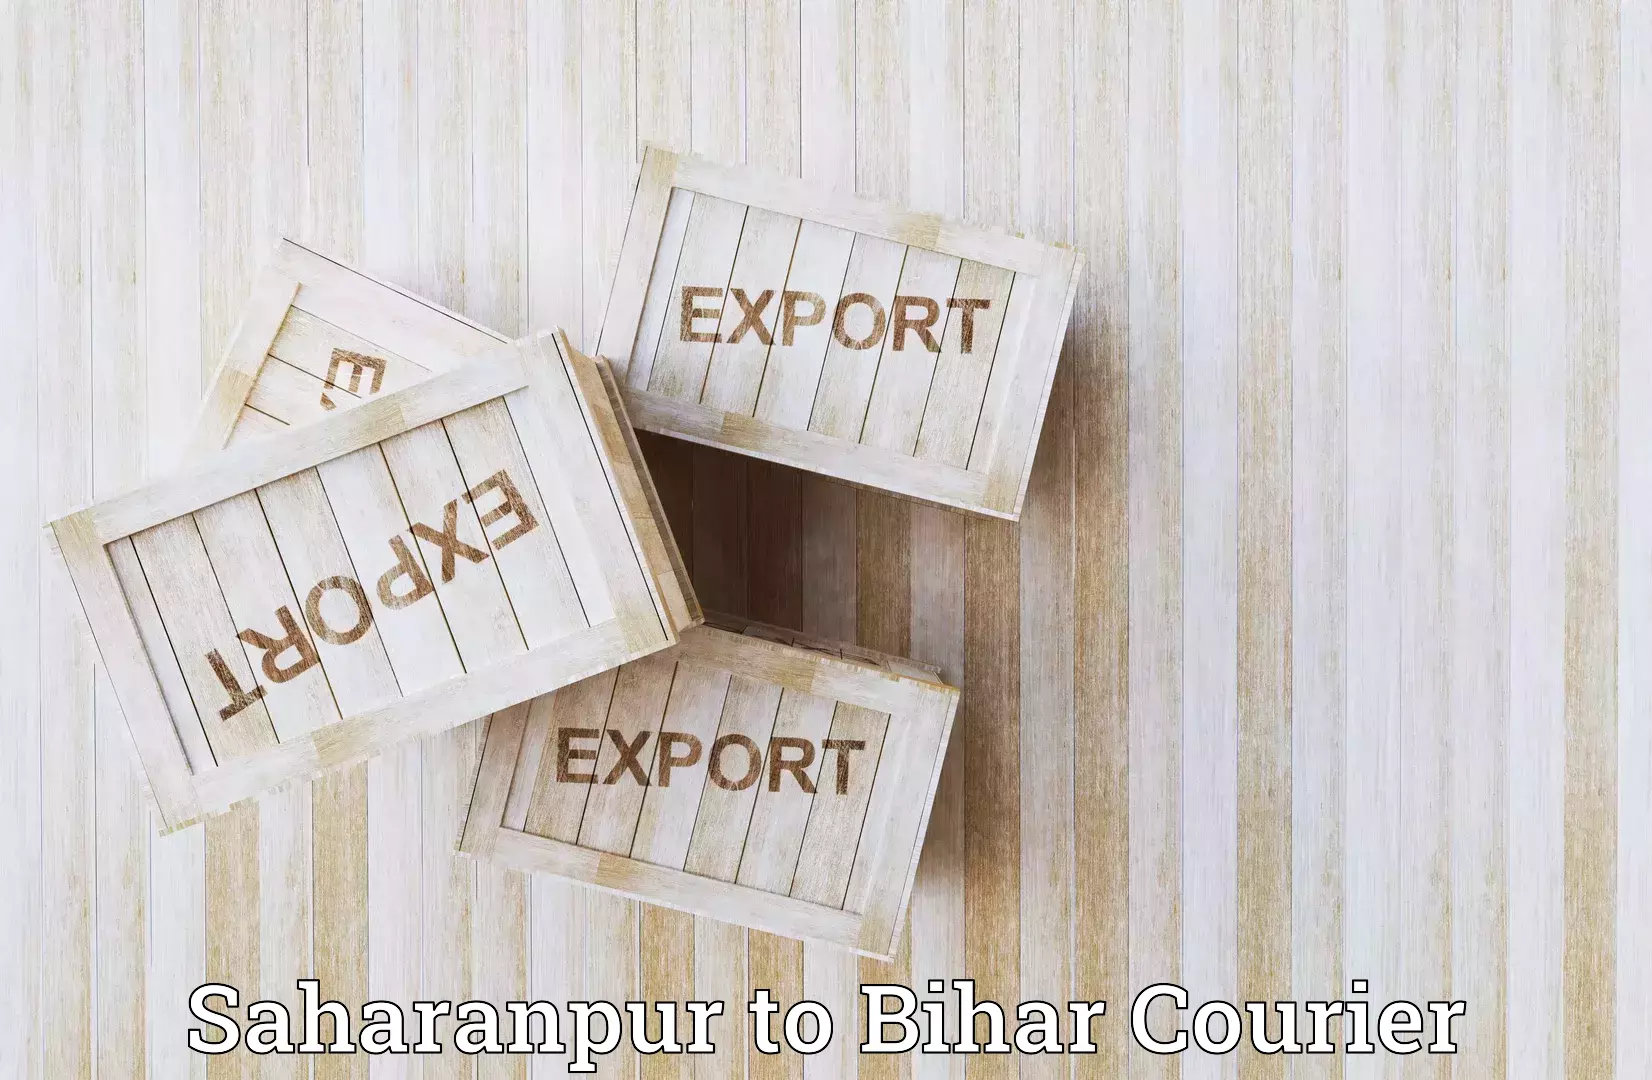 Bulk shipment in Saharanpur to Motipur